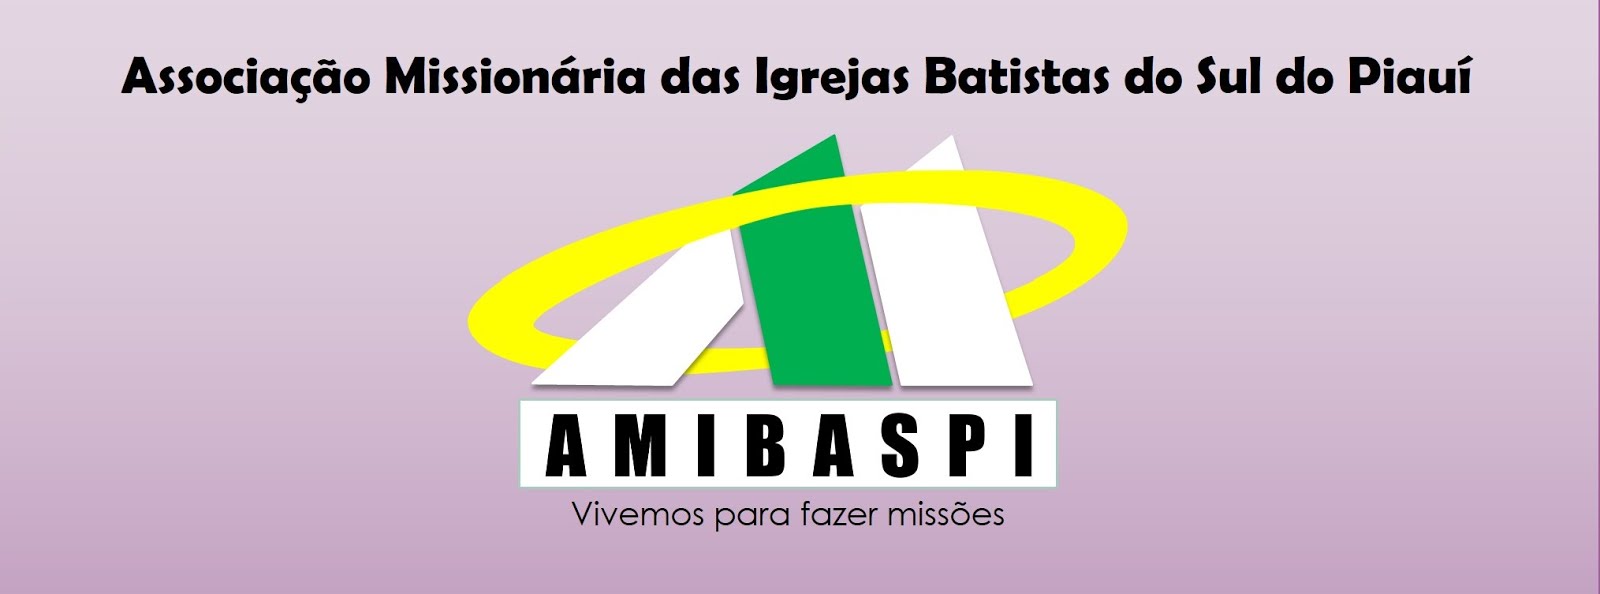 Associação Missionária das Igrejas Batistas do Sul do Piauí